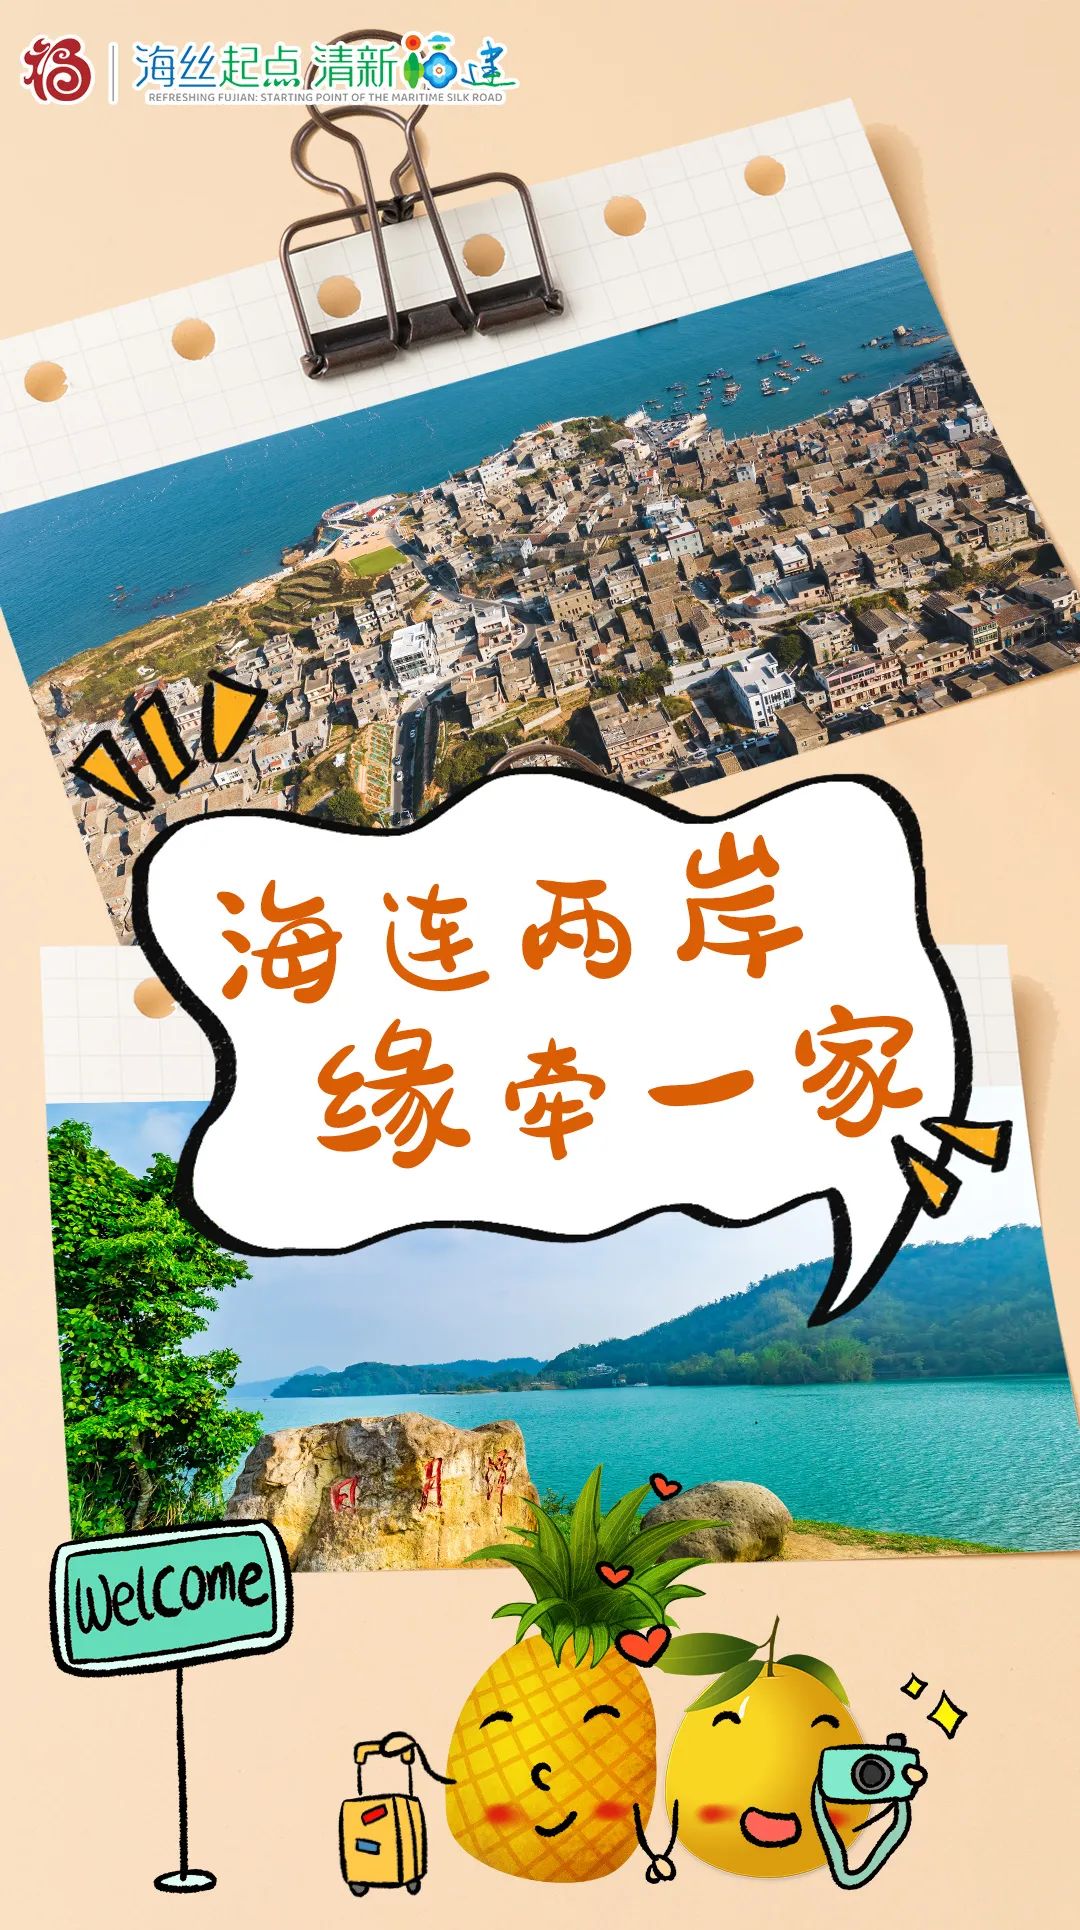 近日,文化和旅游部宣布将率先恢复福建居民到马祖旅游并在平潭到台湾